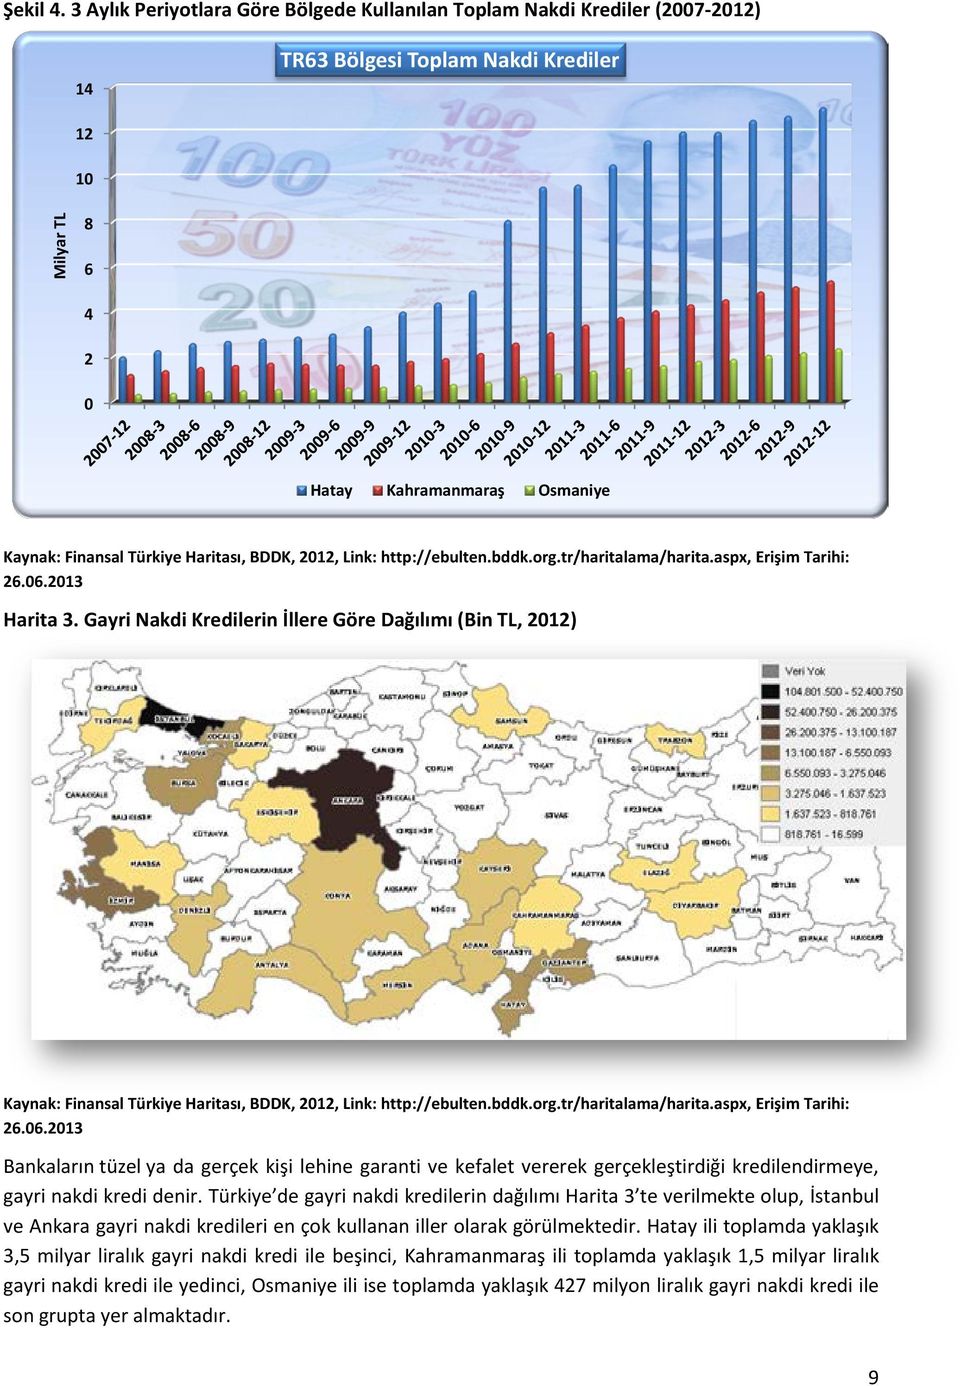 Türkiye de gayri nakdi kredilerin dağılımı Harita 3 te verilmekte olup, İstanbul ve Ankara gayri nakdi kredileri en çok kullanan iller olarak görülmektedir.